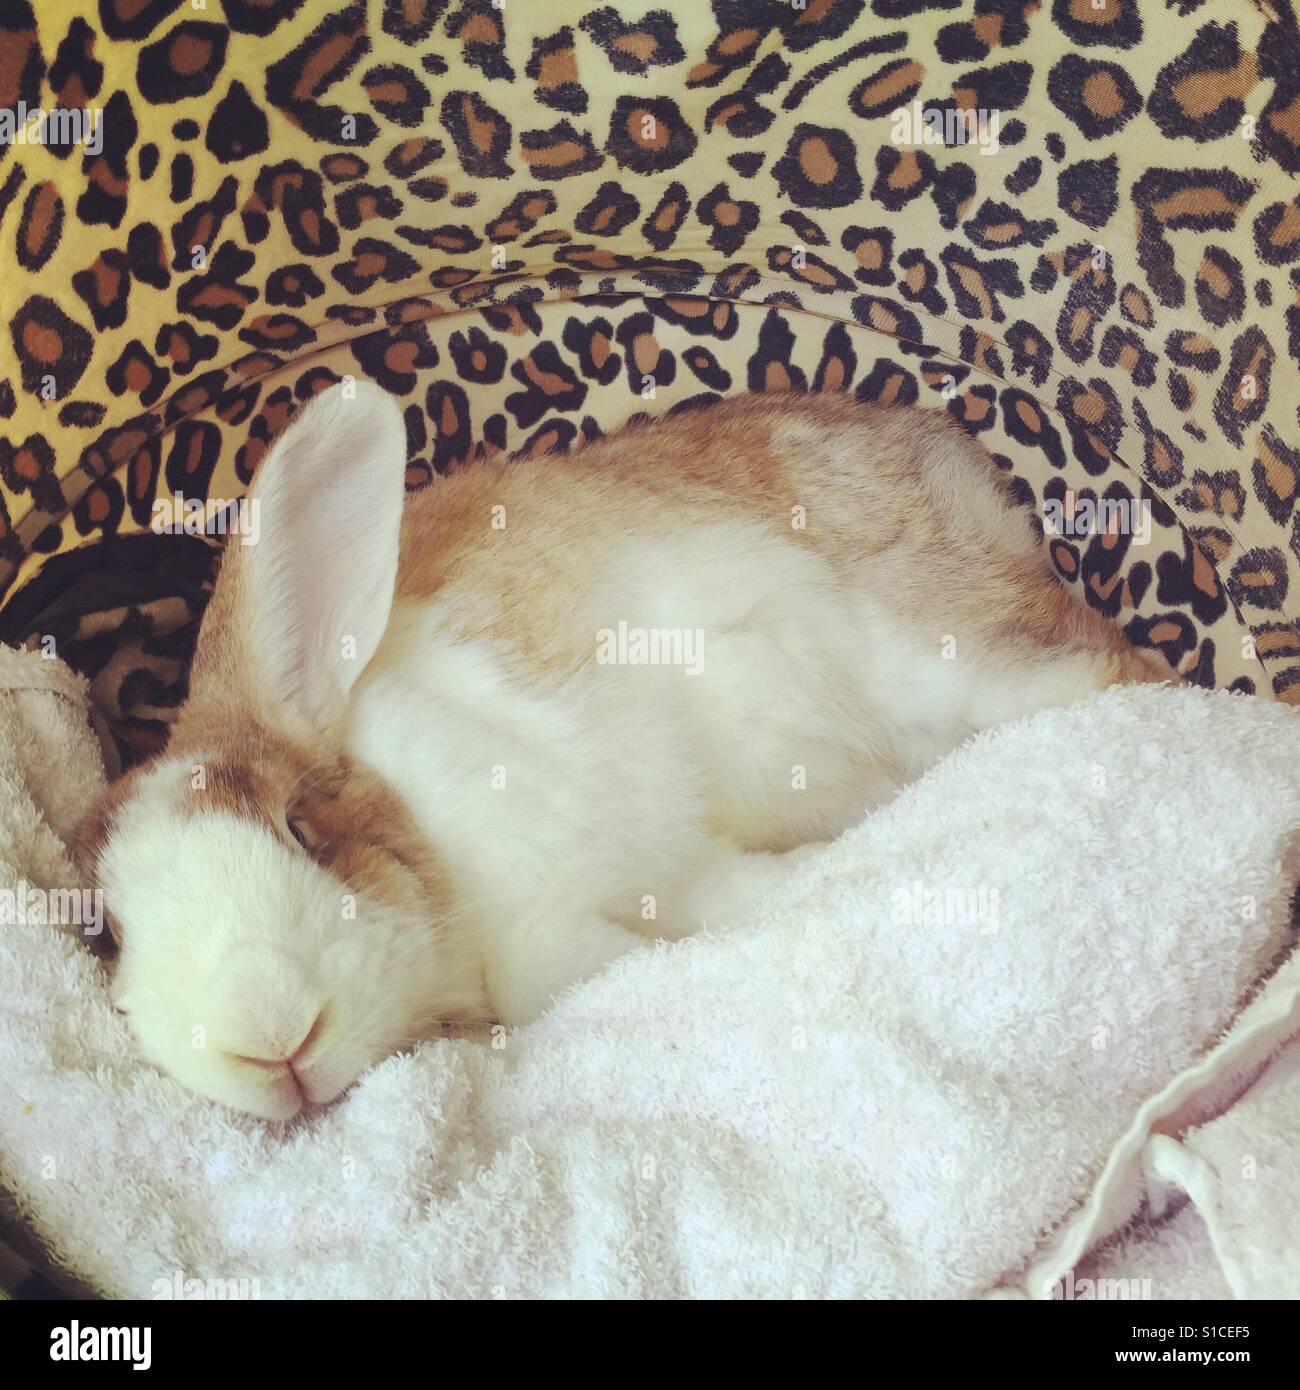 Sleepy bunny Stock Photo